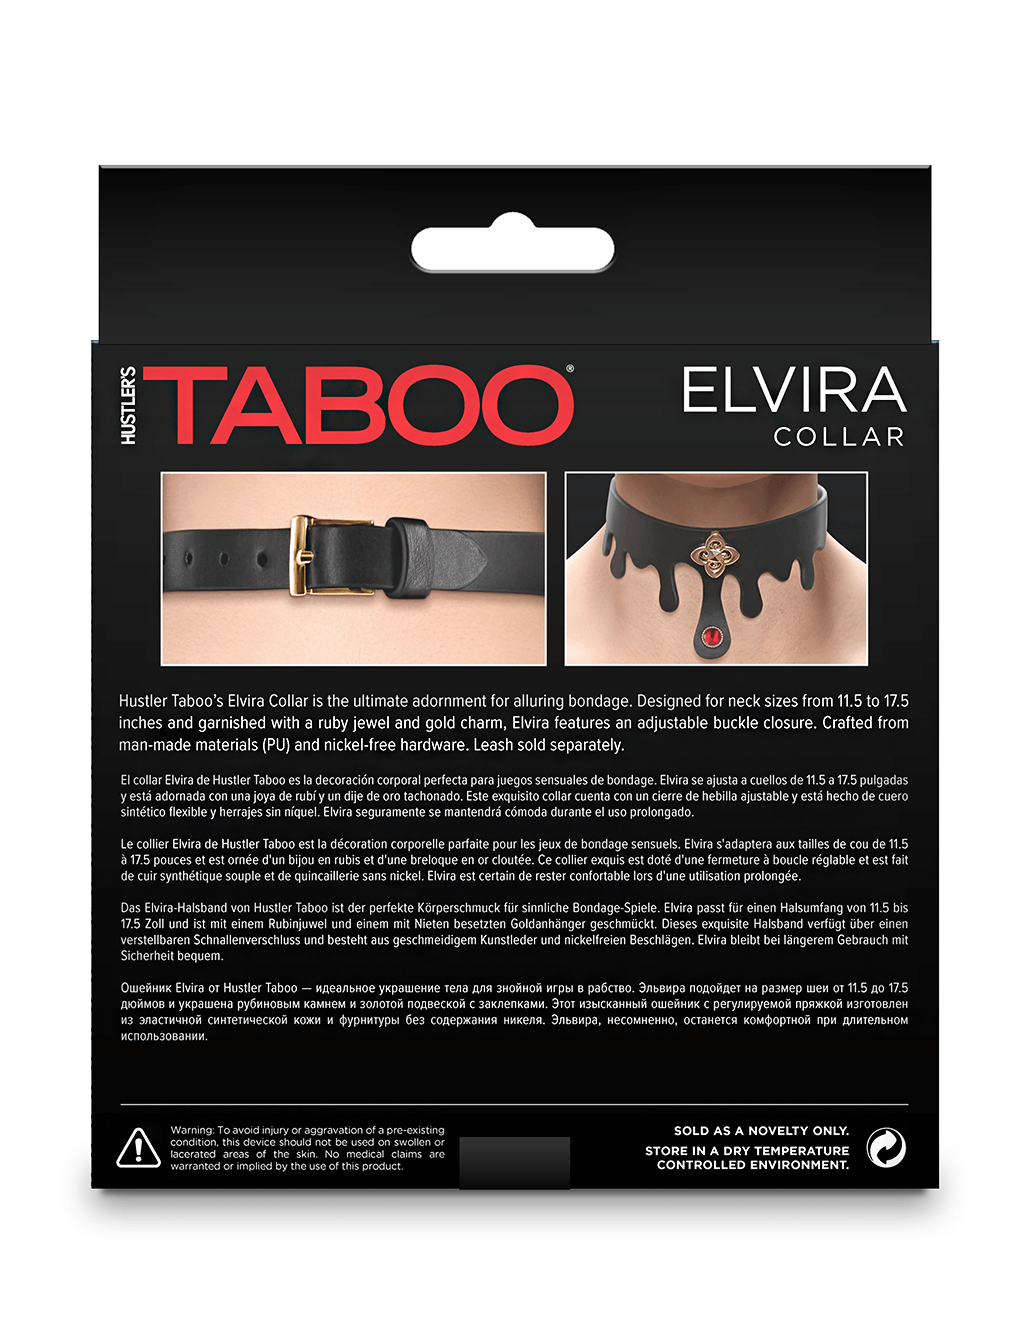 Taboo Elvira Collar - Box - Back